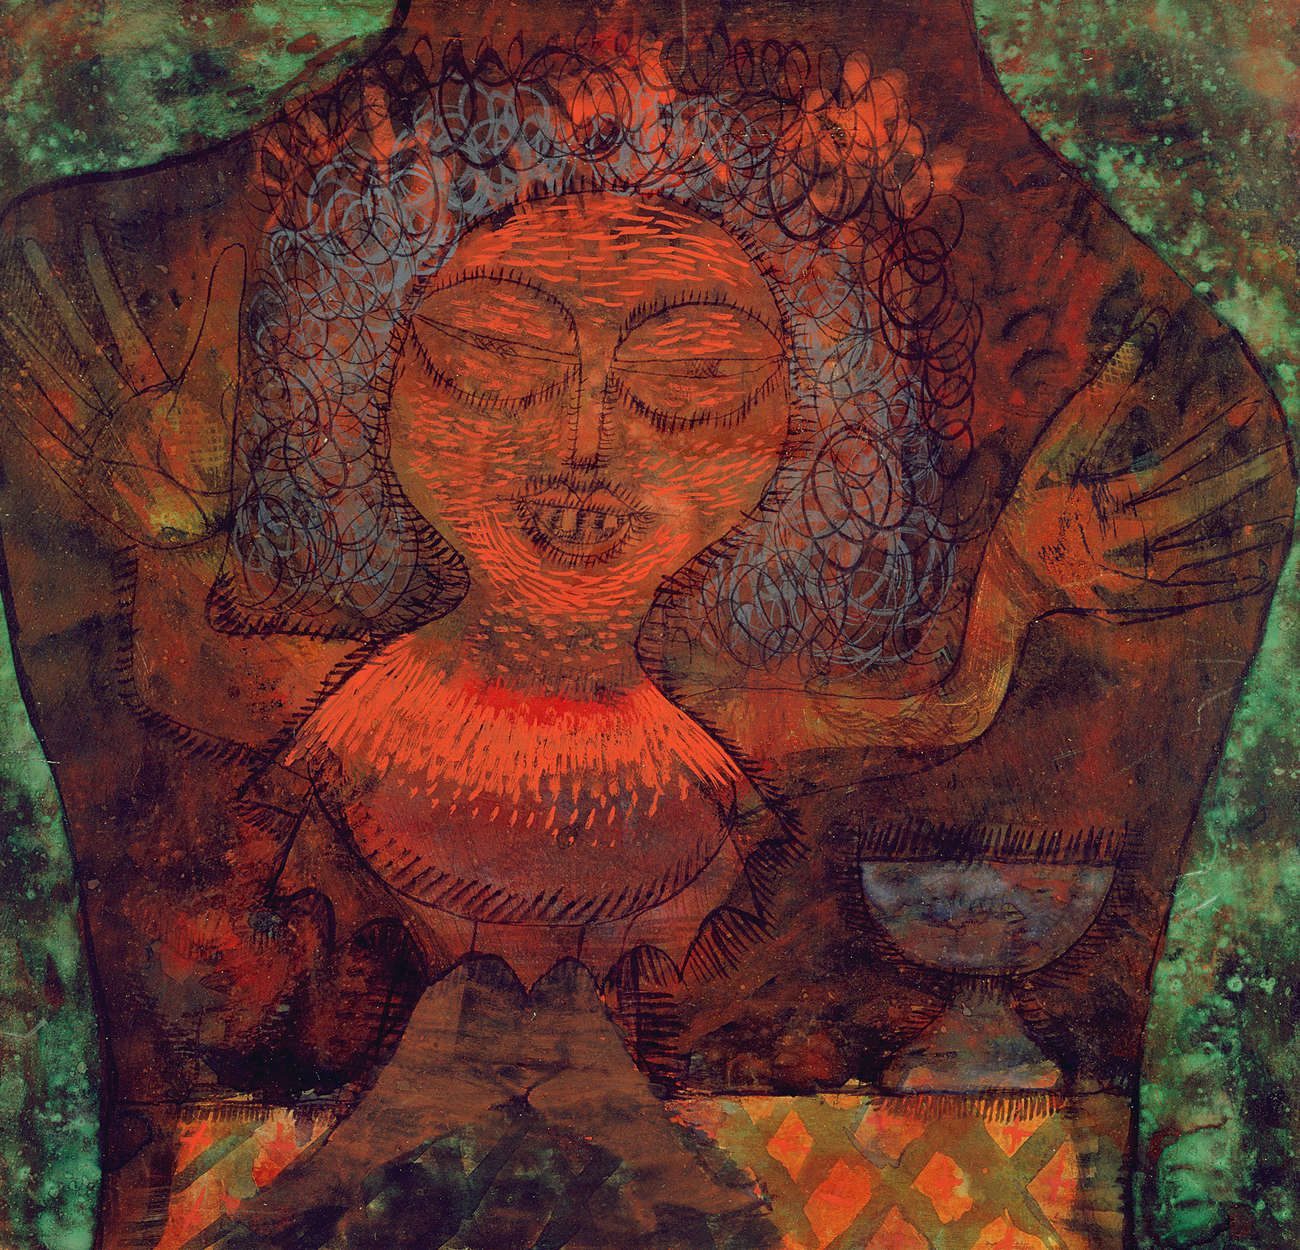             Papier peint panoramique "Prophète" de Paul Klee
        